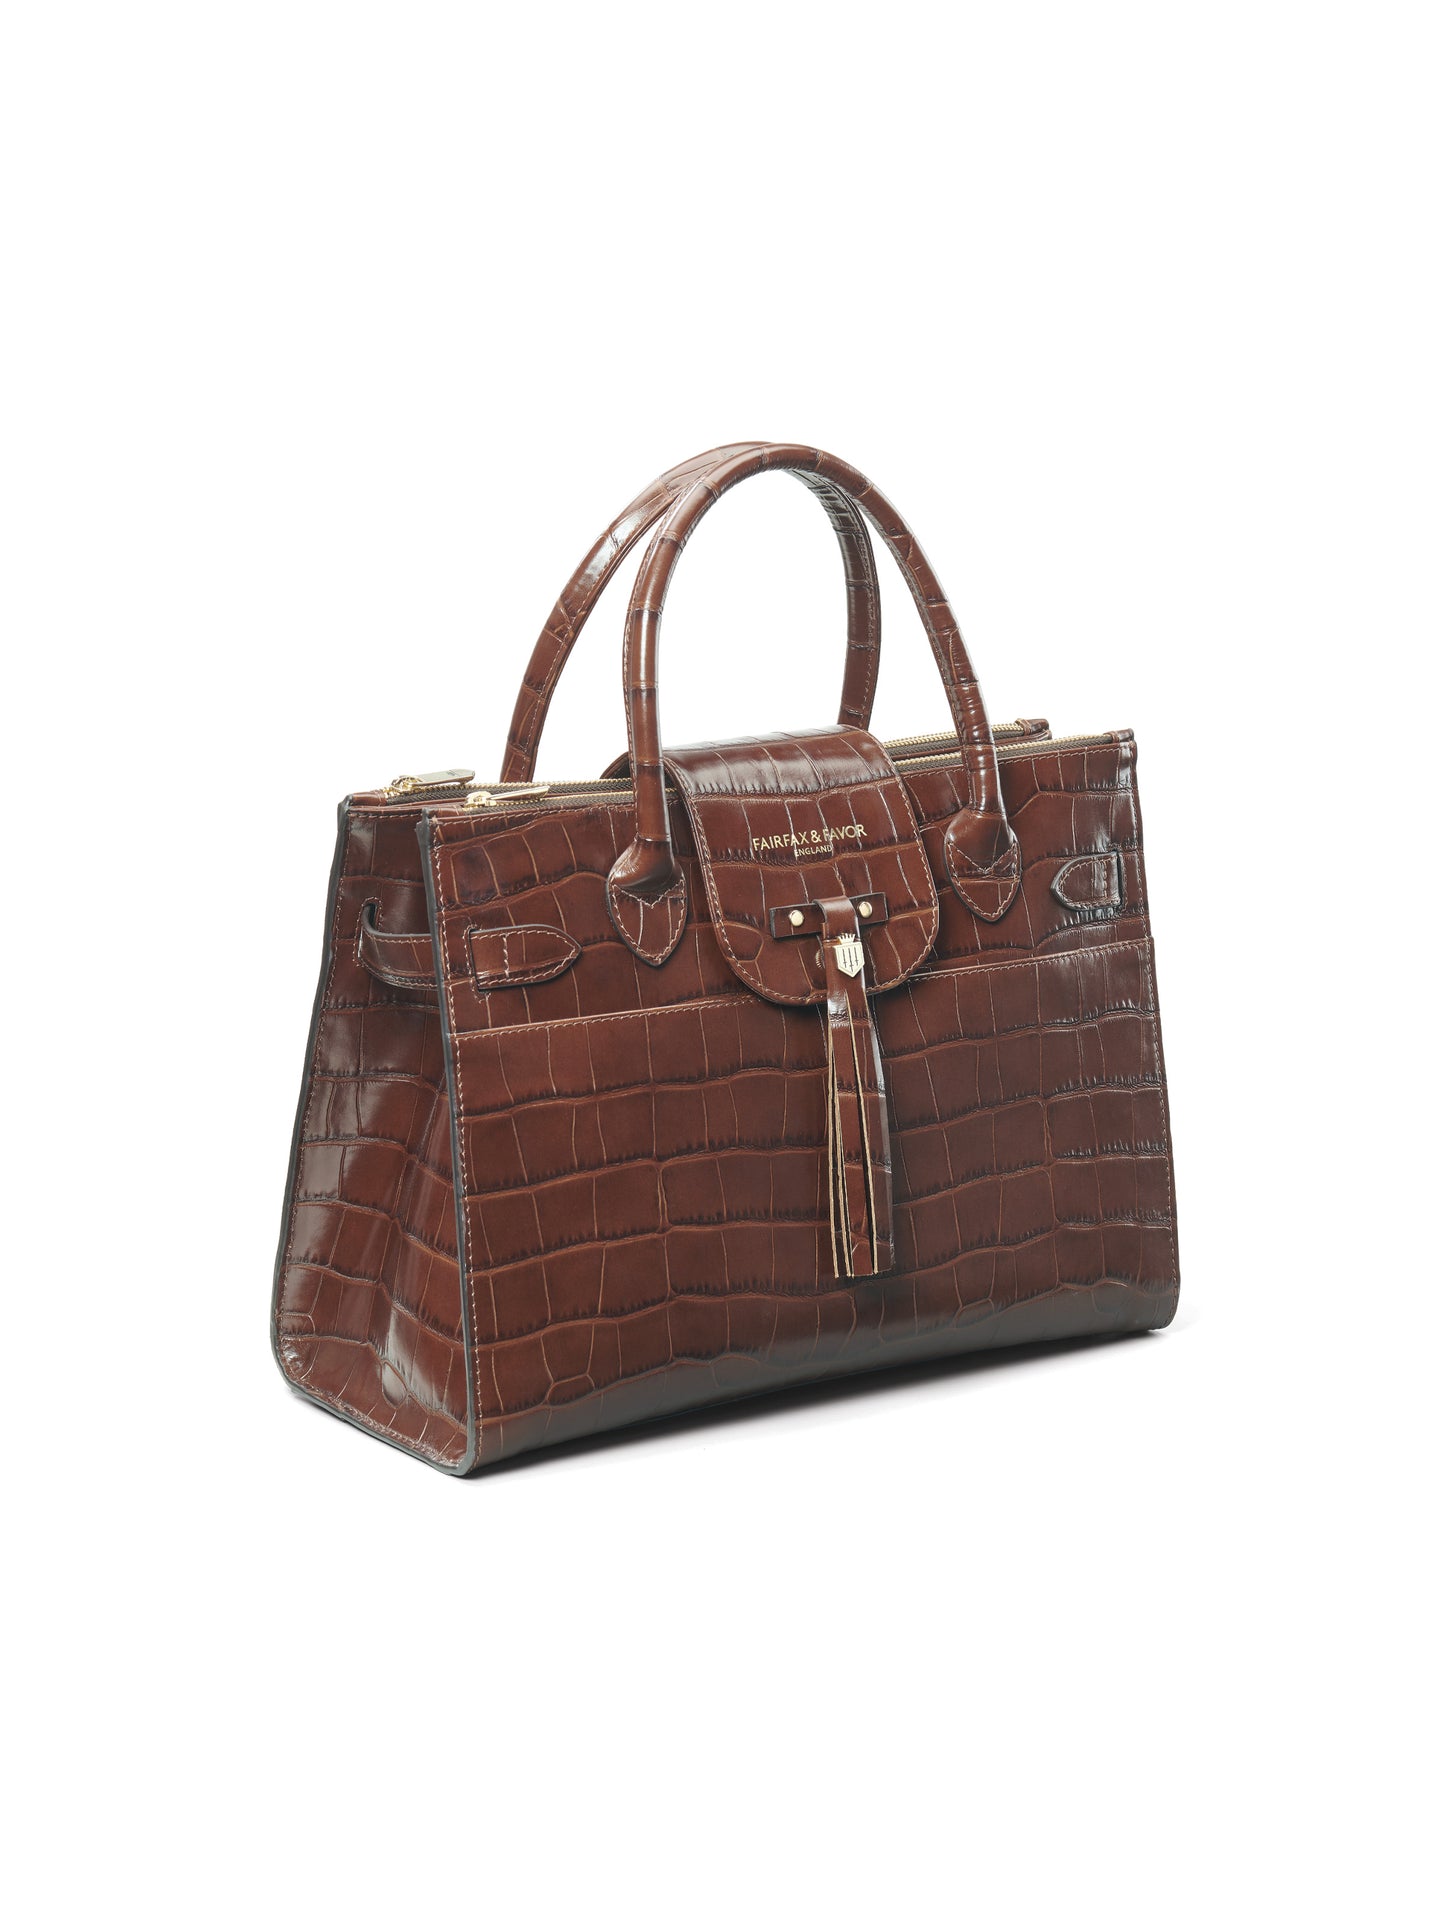 'Windsor Work Bag' Conker Leather